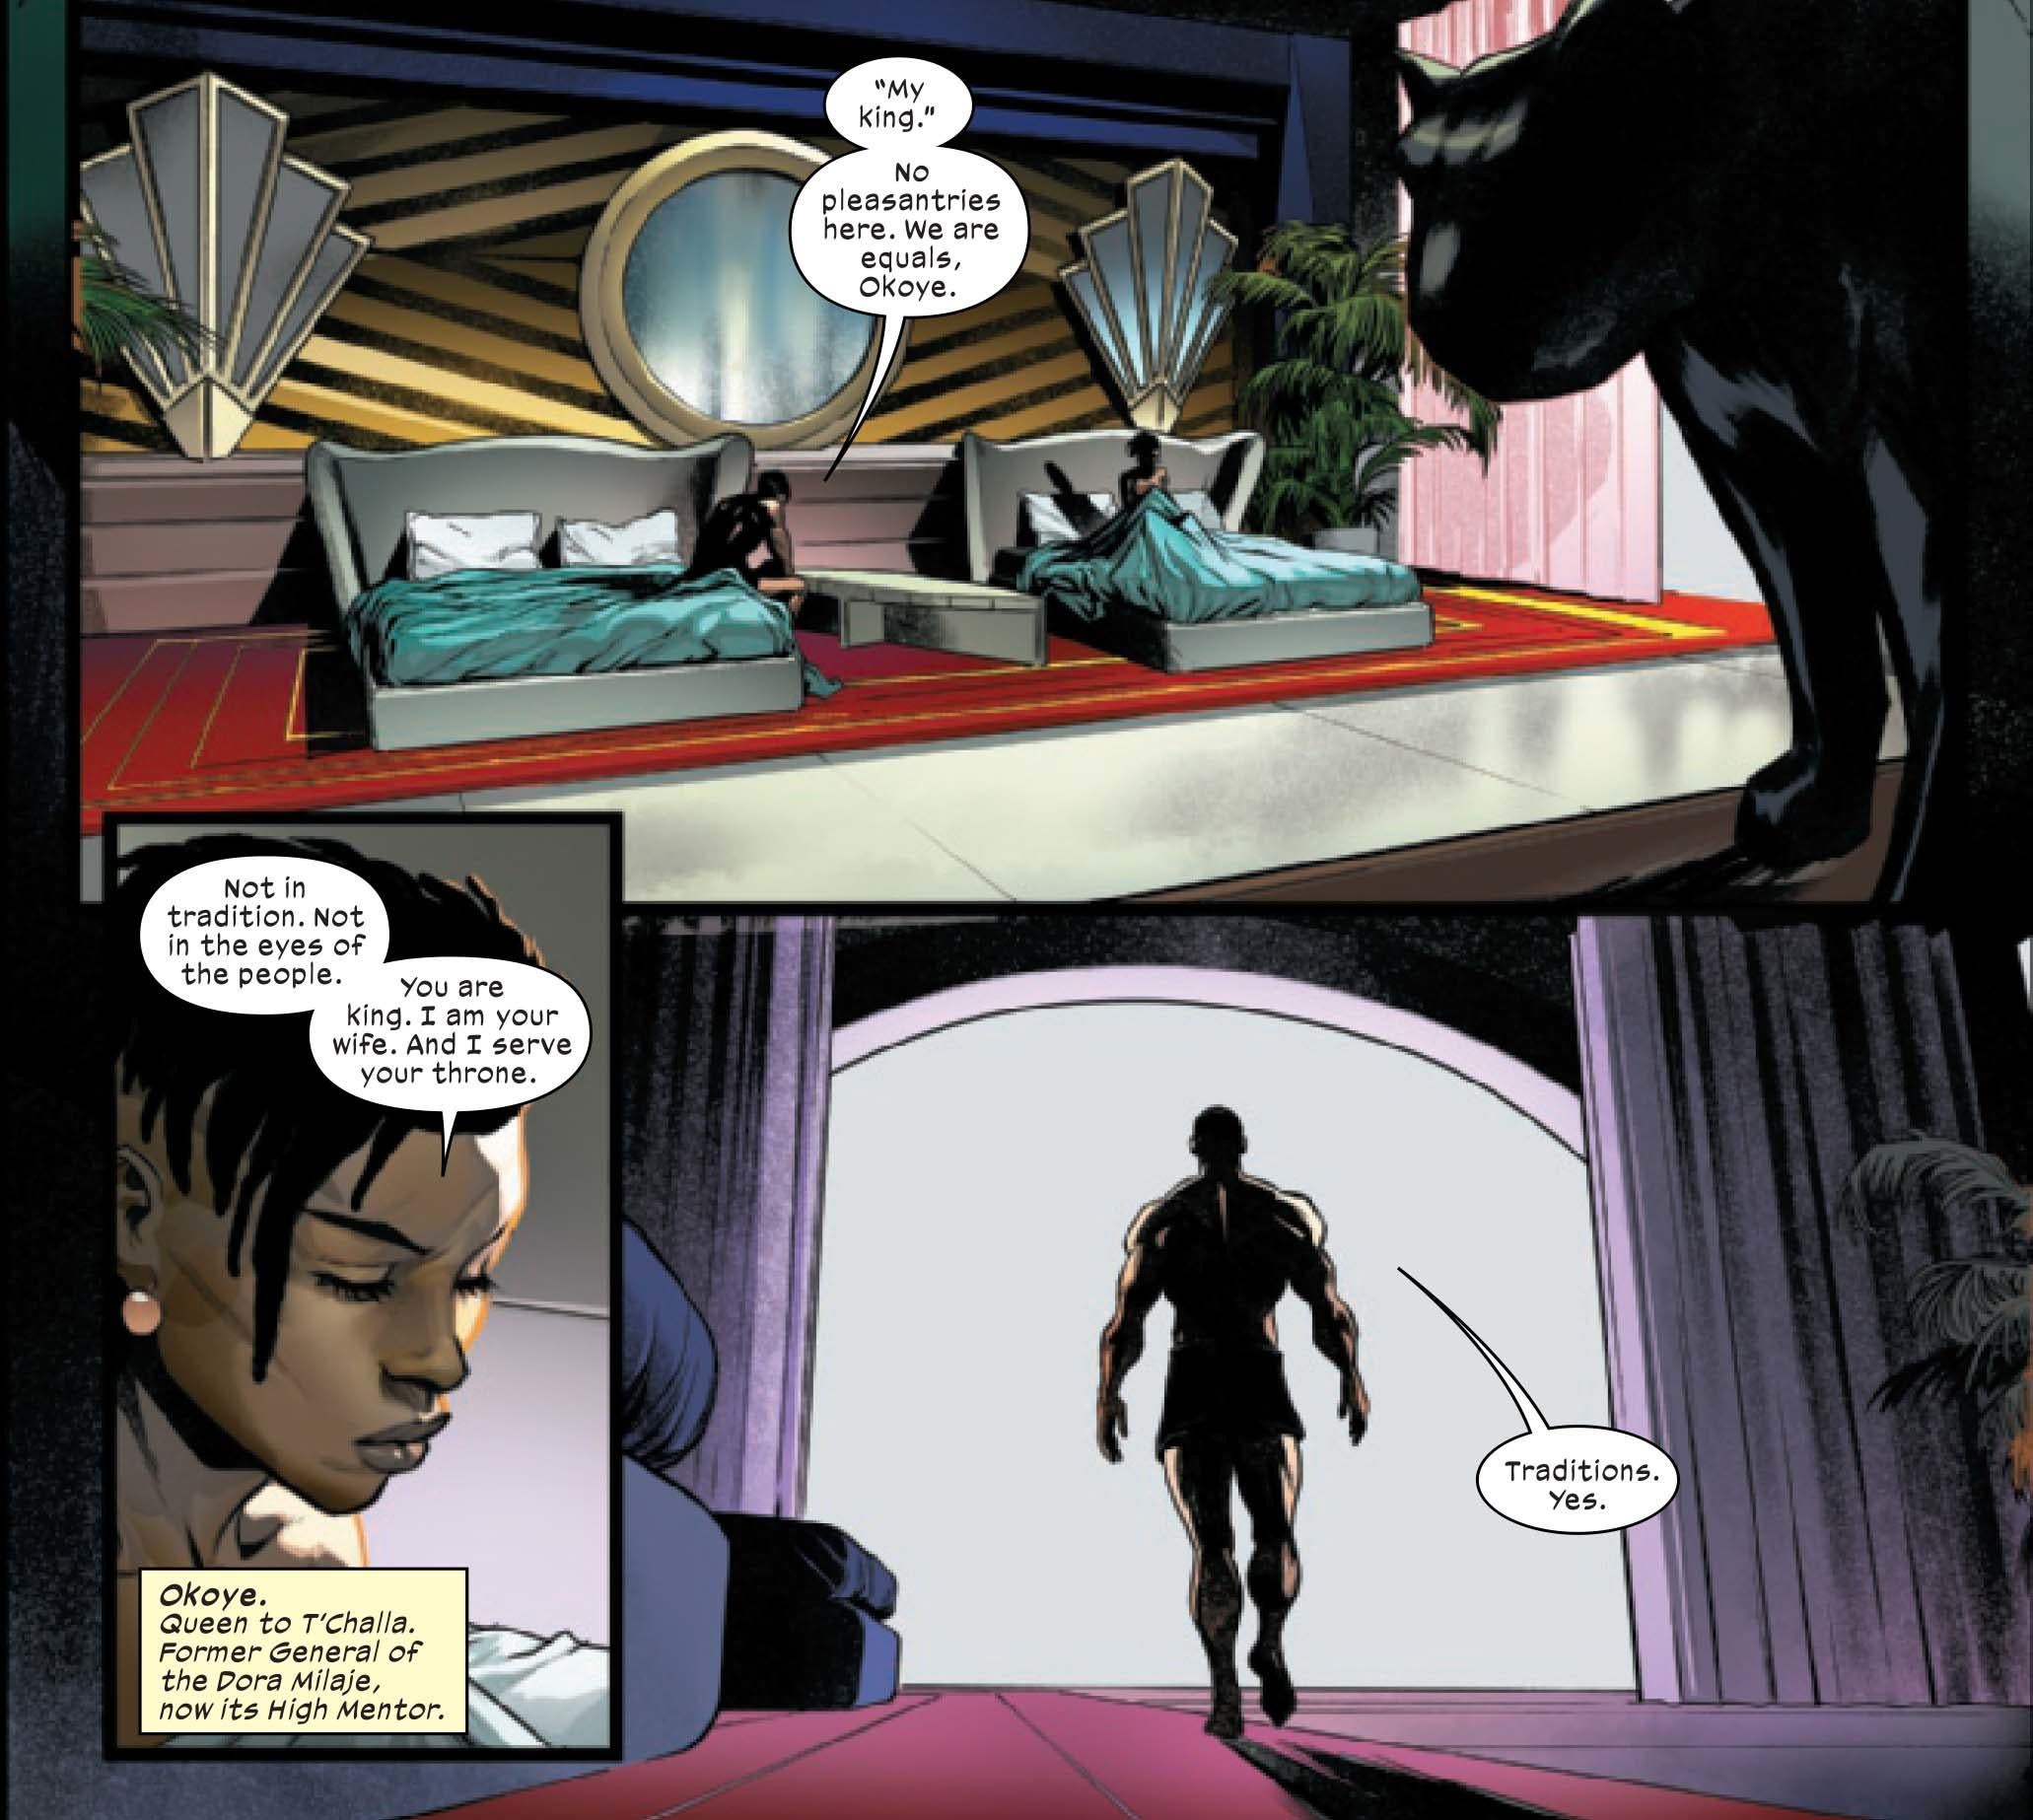 Персонаж Черной Пантеры получает новый статус-кво в Ultimate Universe Marvel